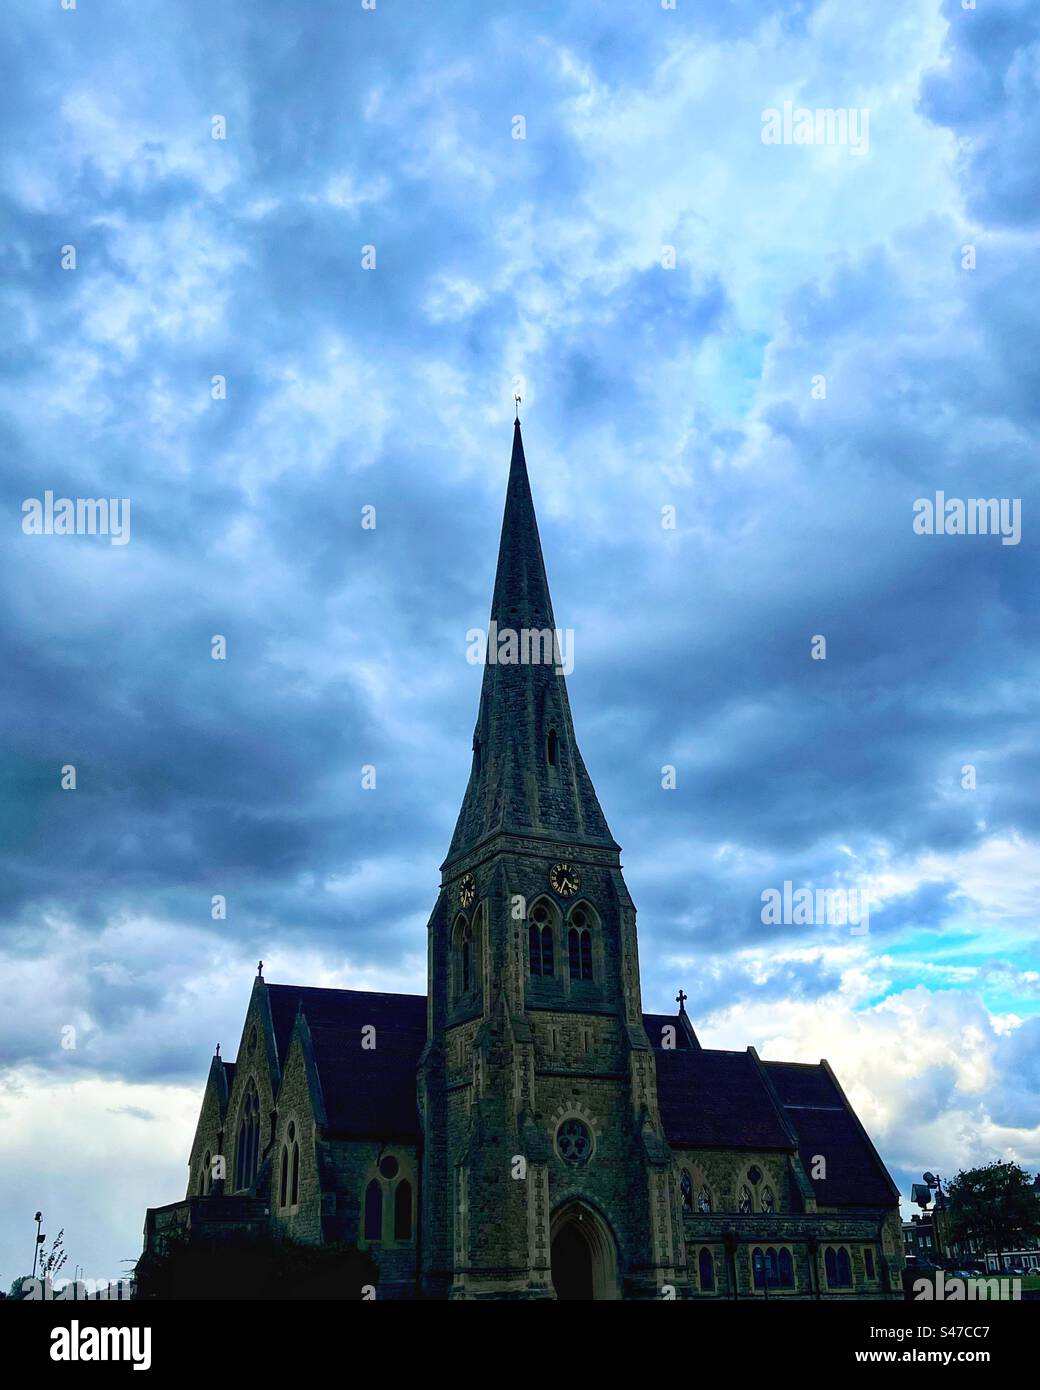 All Saints Church on Blackheath in London - Perspektive - Sturmwolken und Turm. Stockfoto